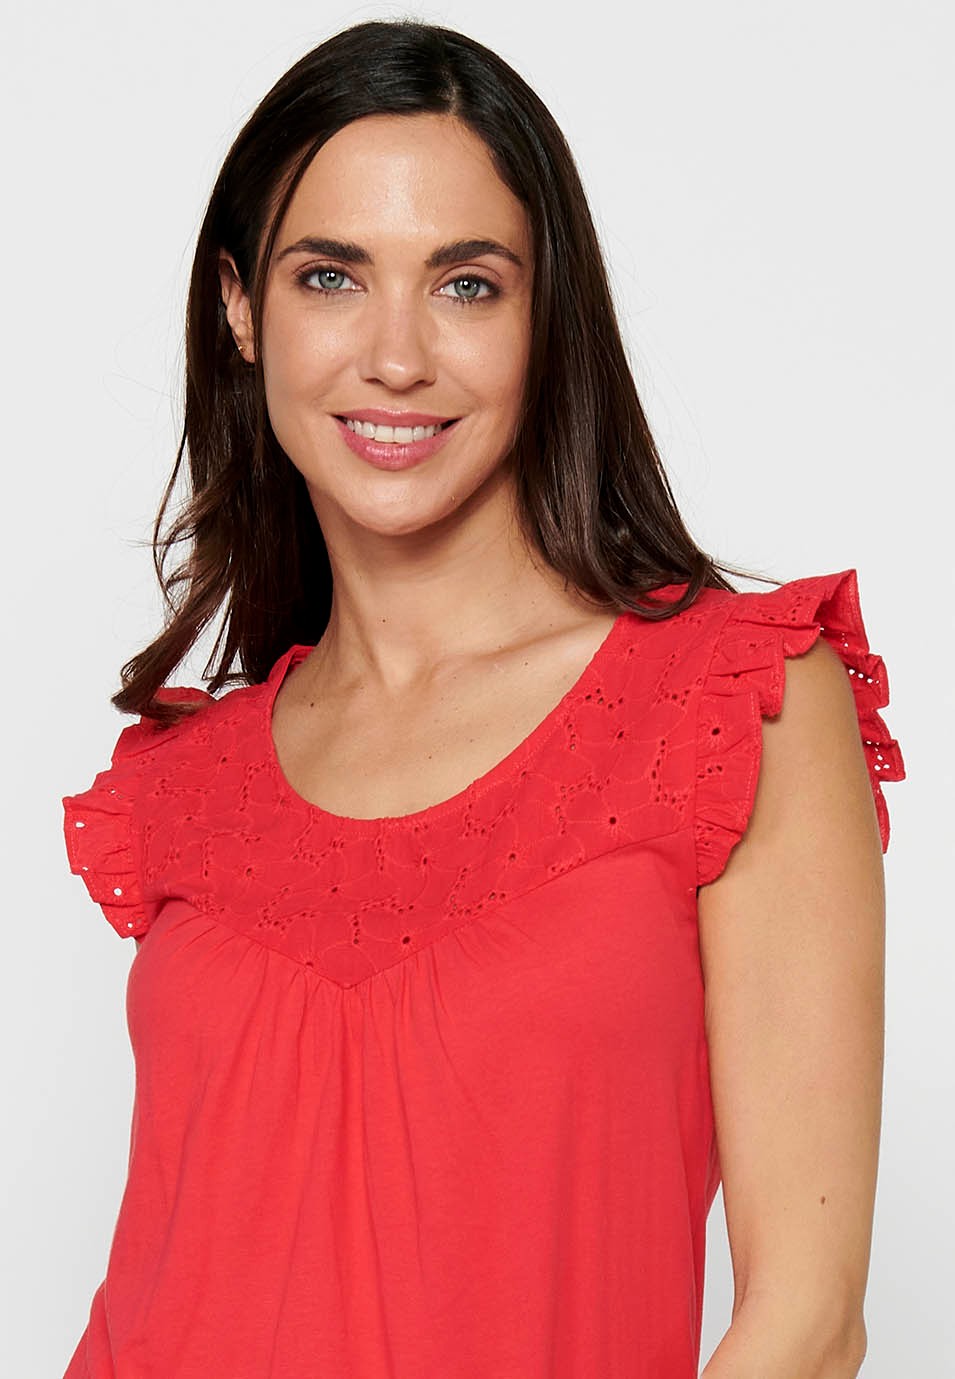 T-shirt à manches courtes et col rond pour femmes, couleur corail, épaules à volants